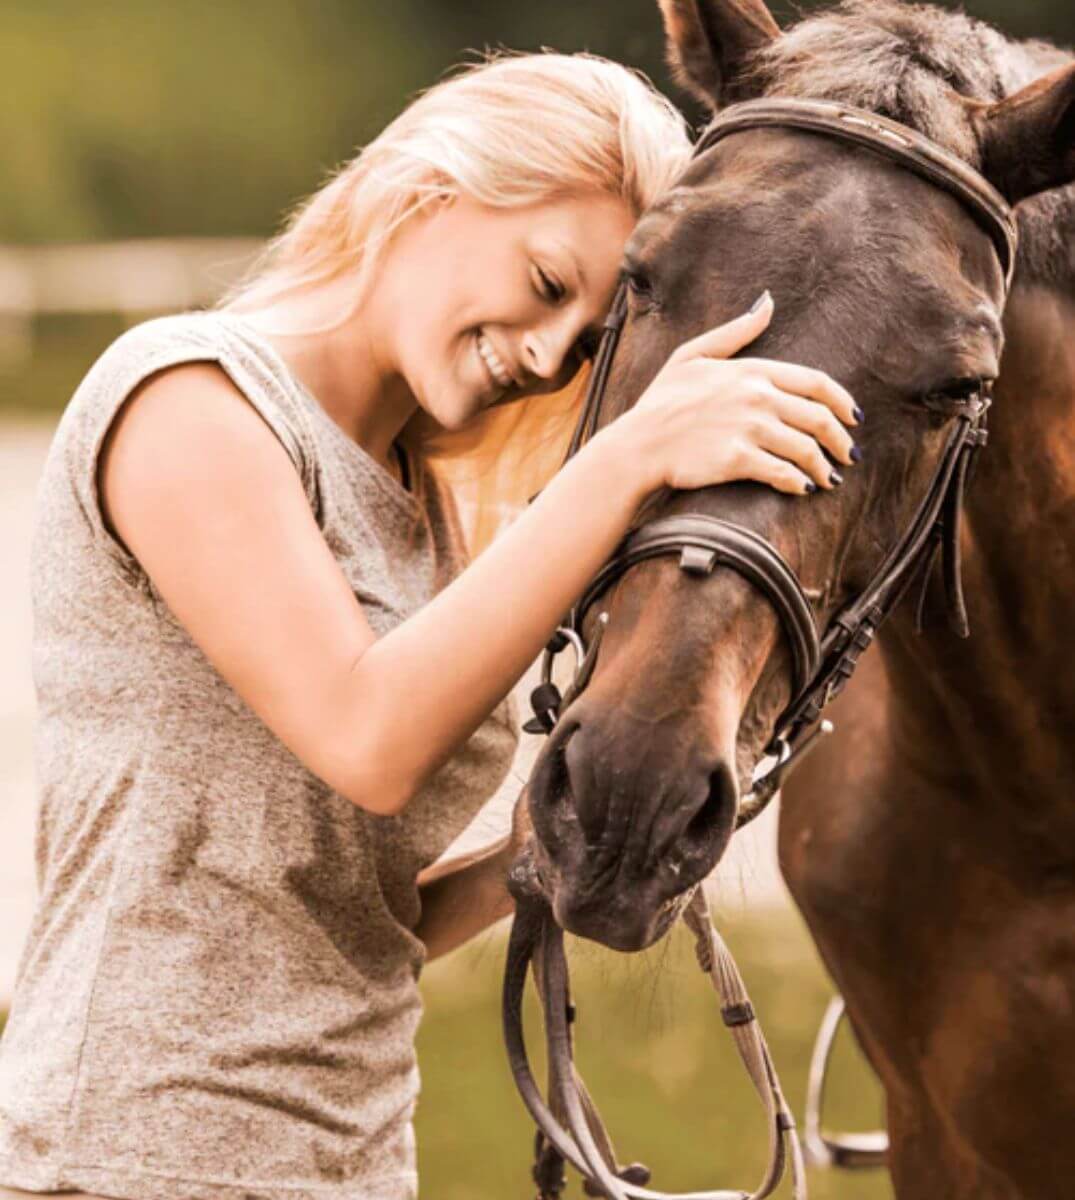 Eine glückliche blonde Frau streichelt liebevoll ihr dunkelbraunes Pferd auf einer sonnigen Weide, ein Moment der Verbindung zwischen Mensch und Tier.